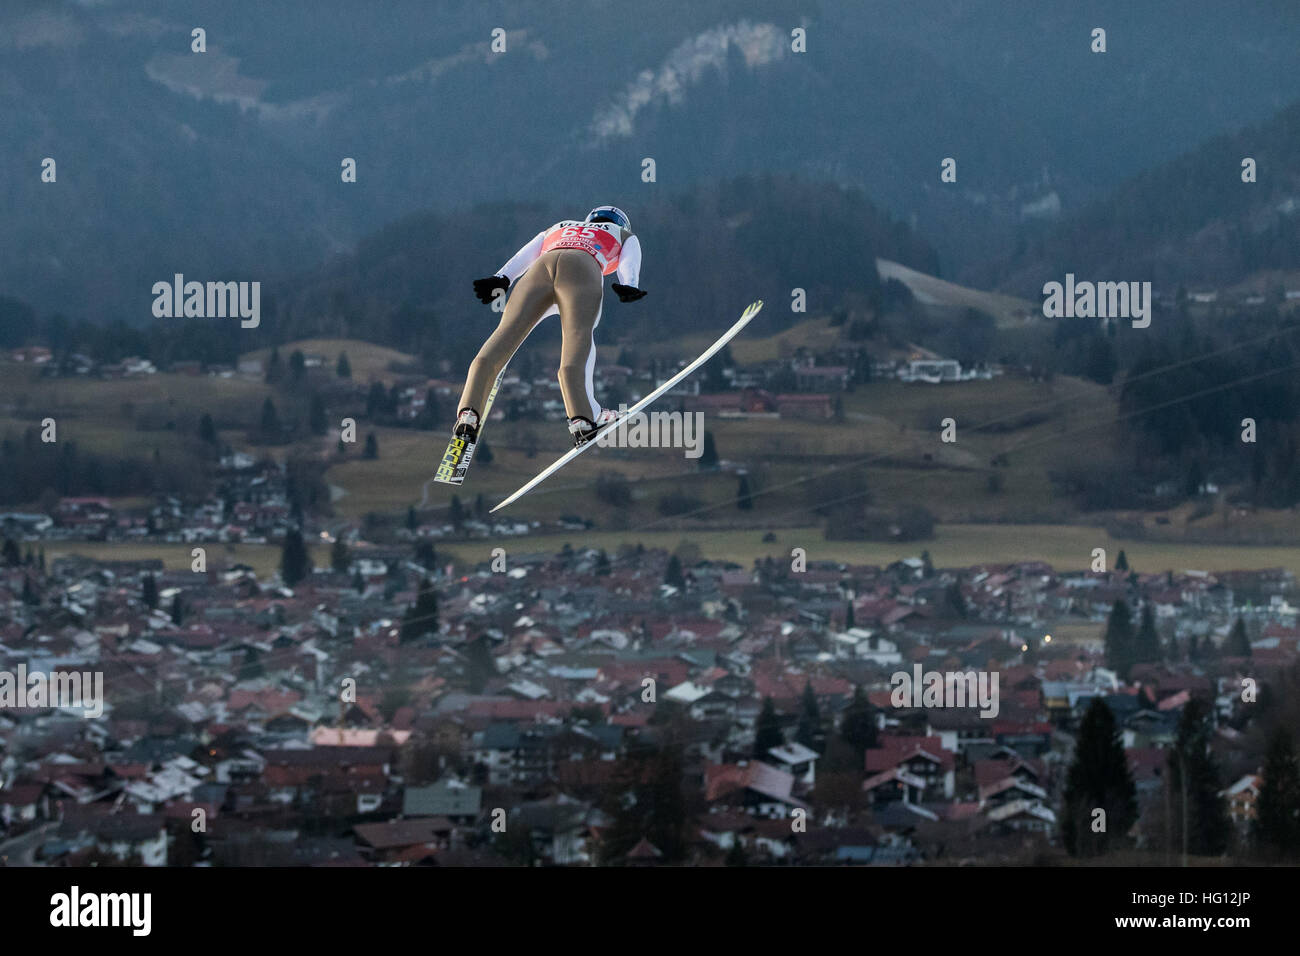 29.12.2017. Oberstdorf, Alemania. Puente de esquí polaco Maciej Kot en acción durante un salto en la práctica cuatro colinas Torneo en Oberstdorf, Alemania, el 29 de diciembre de 2016. Foto de stock